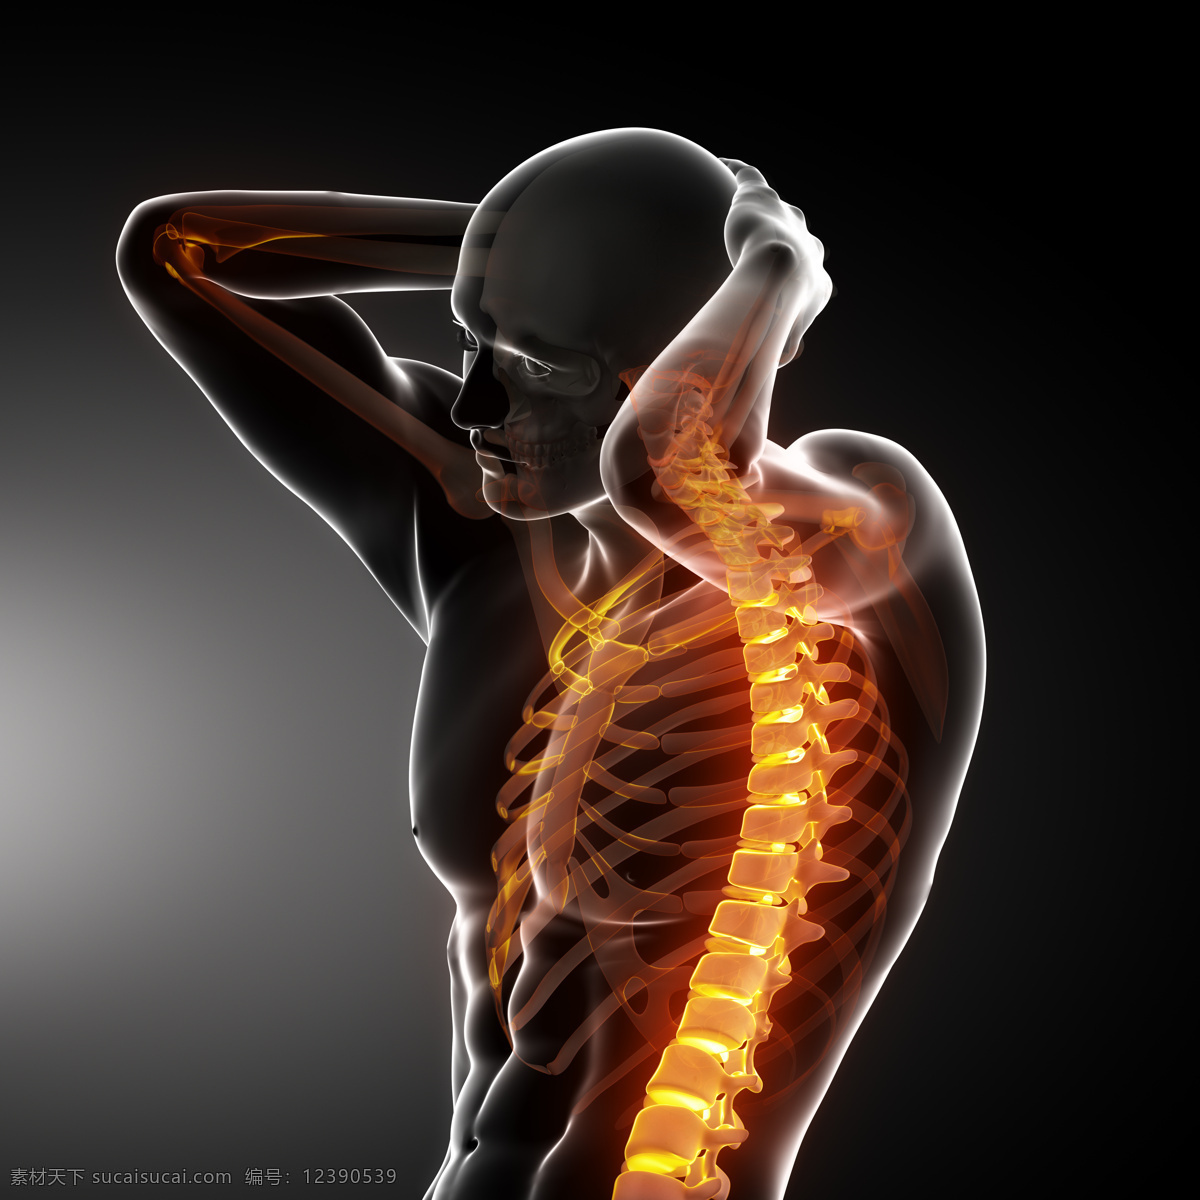 男性 人体 骨骼 人体骨骼 脊椎 脊髓 男性人体器官 医疗科学 医学 人体器官图 人物图片